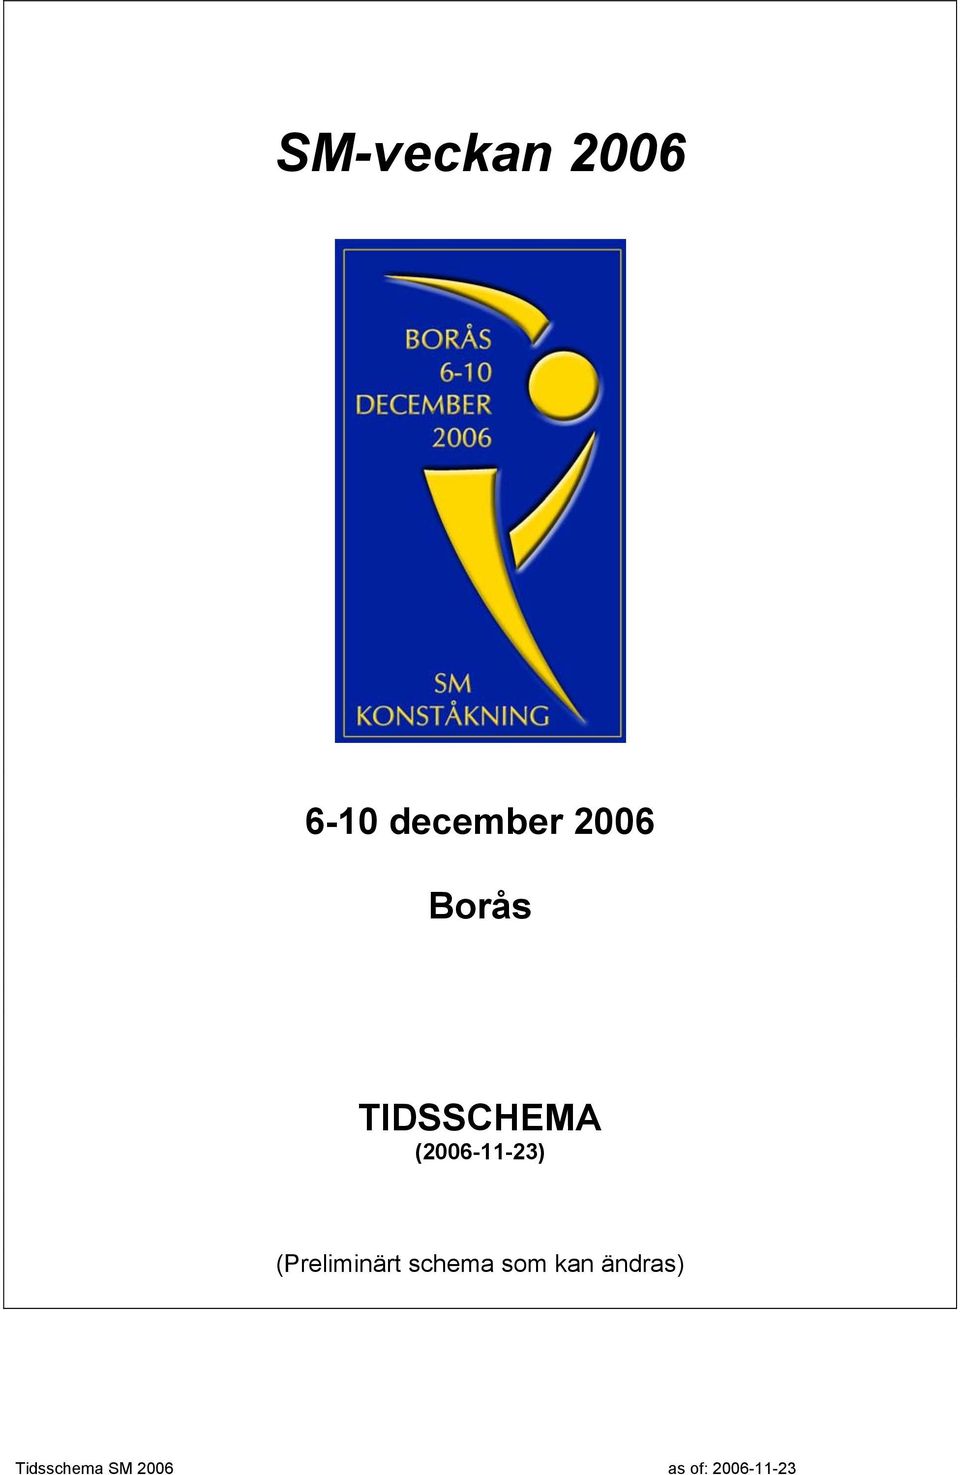 TIDSSCHEMA (2006-11-23)